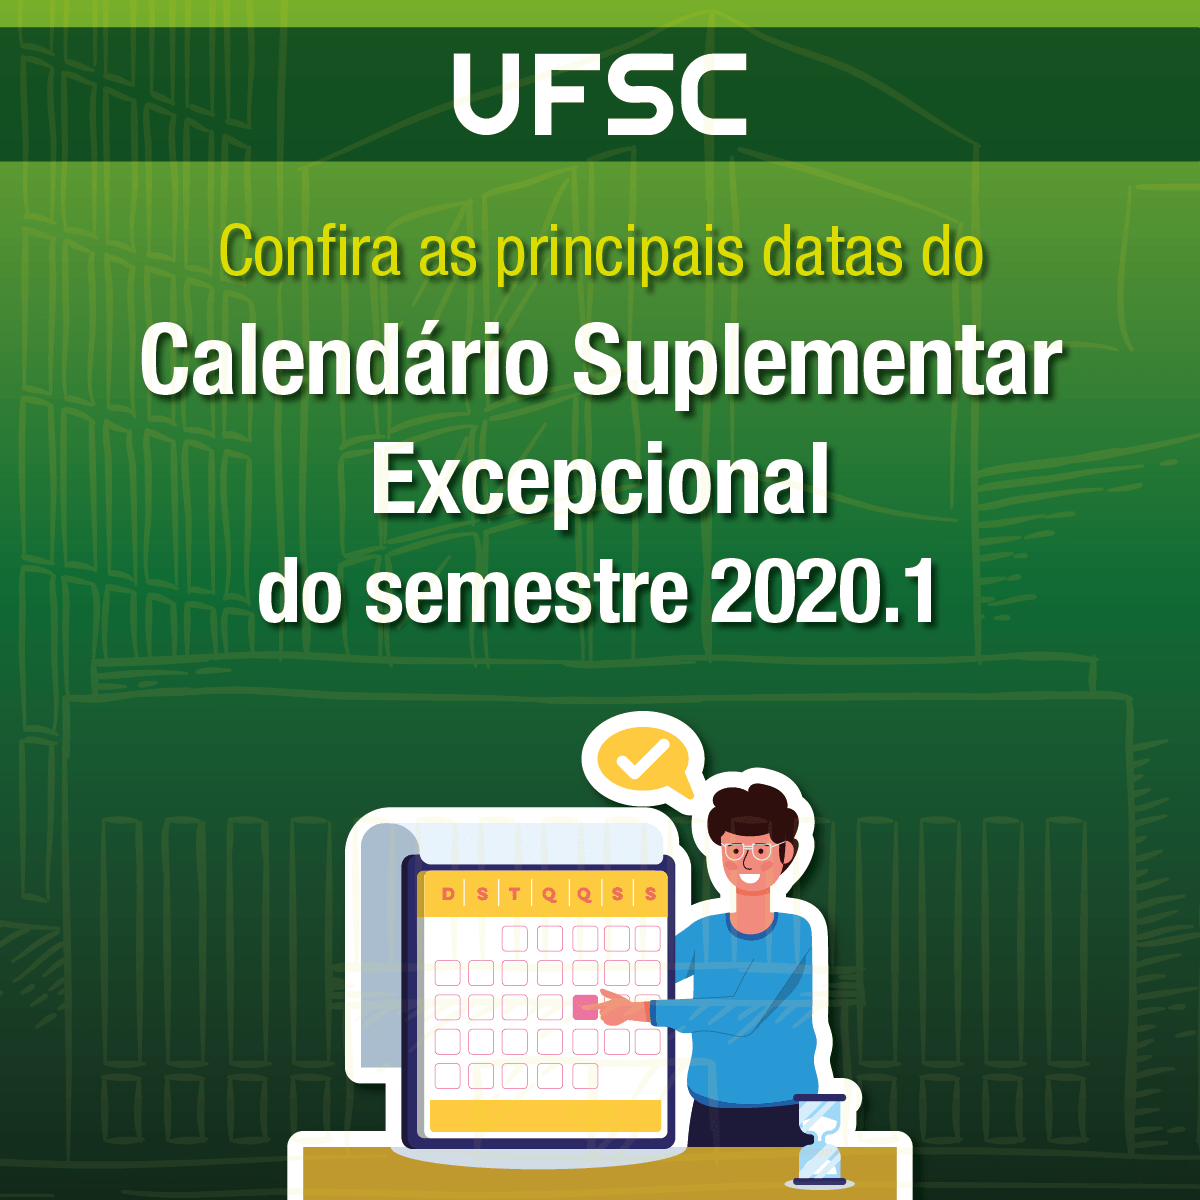 Confira O Calendário Suplementar Excepcional 2020 1 Para Os Cursos De Graduação Da Ufsc Apufsc